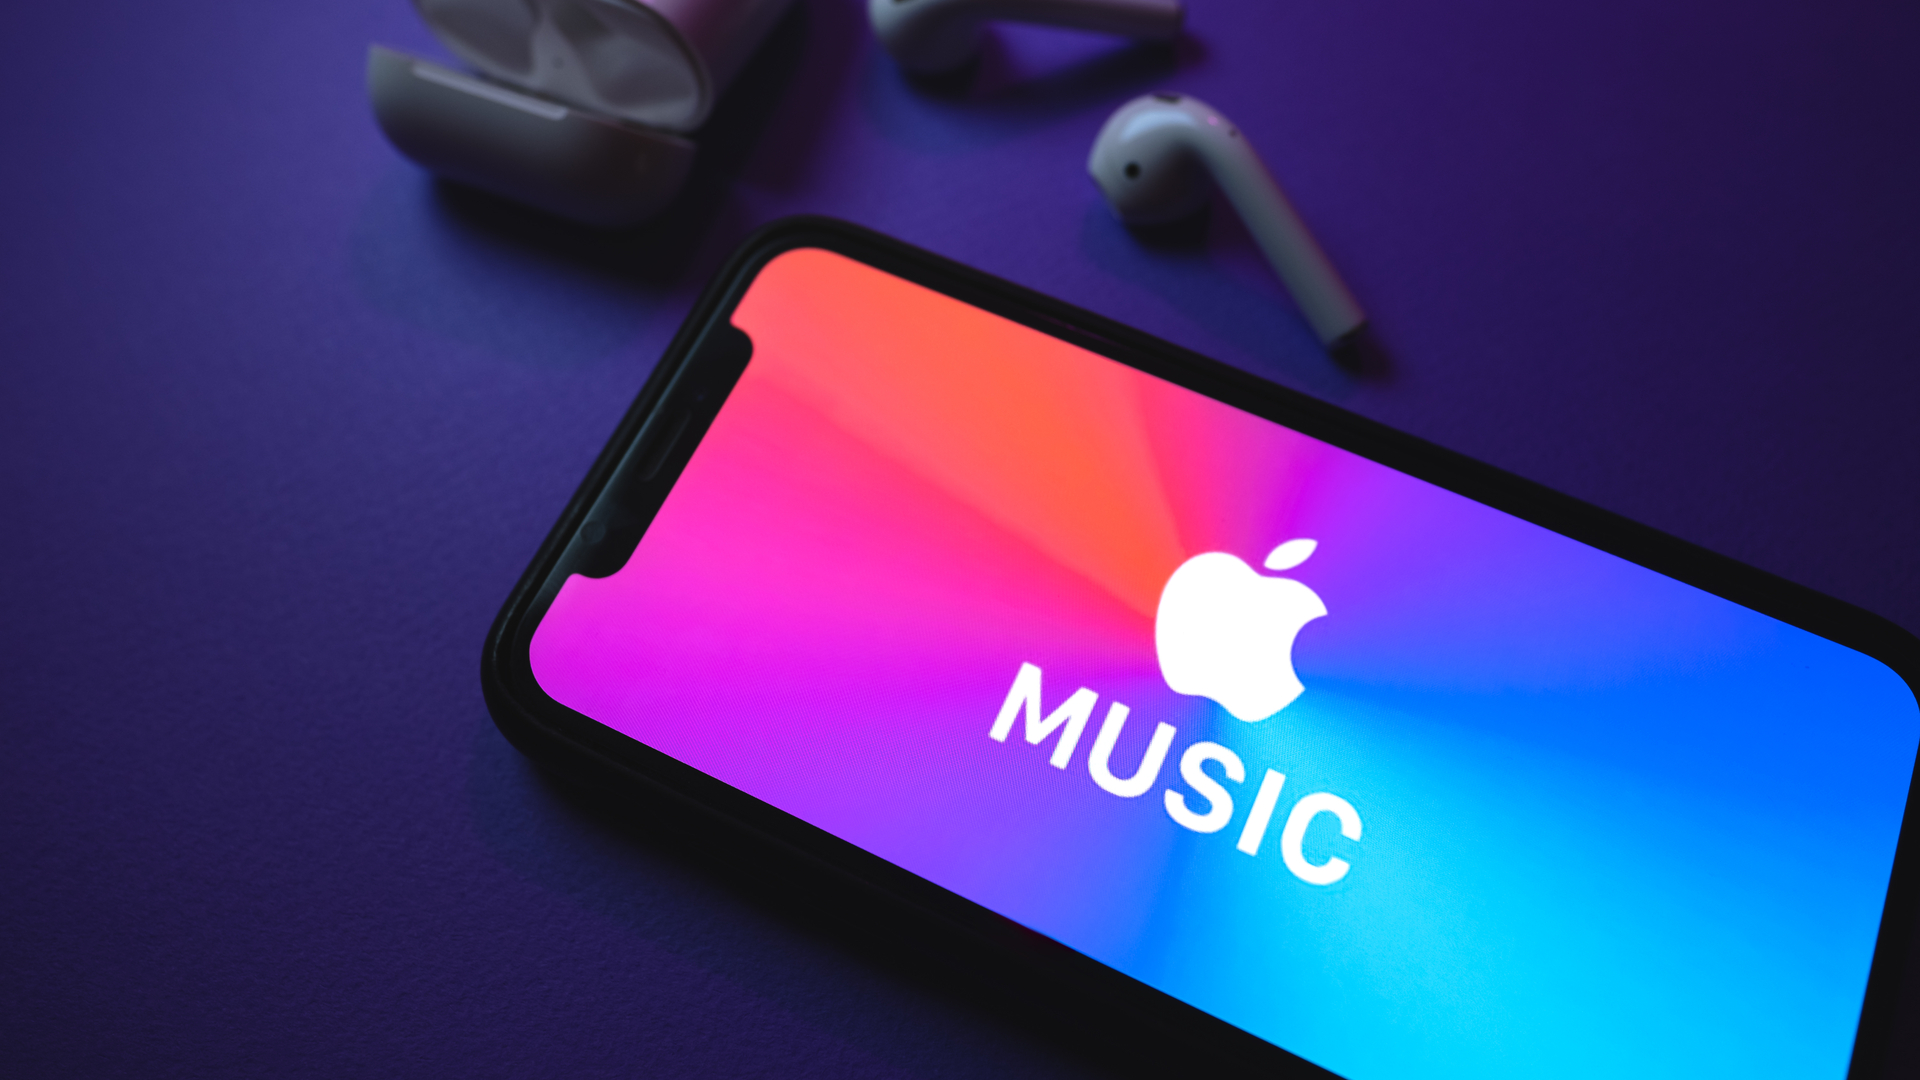 Instafest for Apple Music